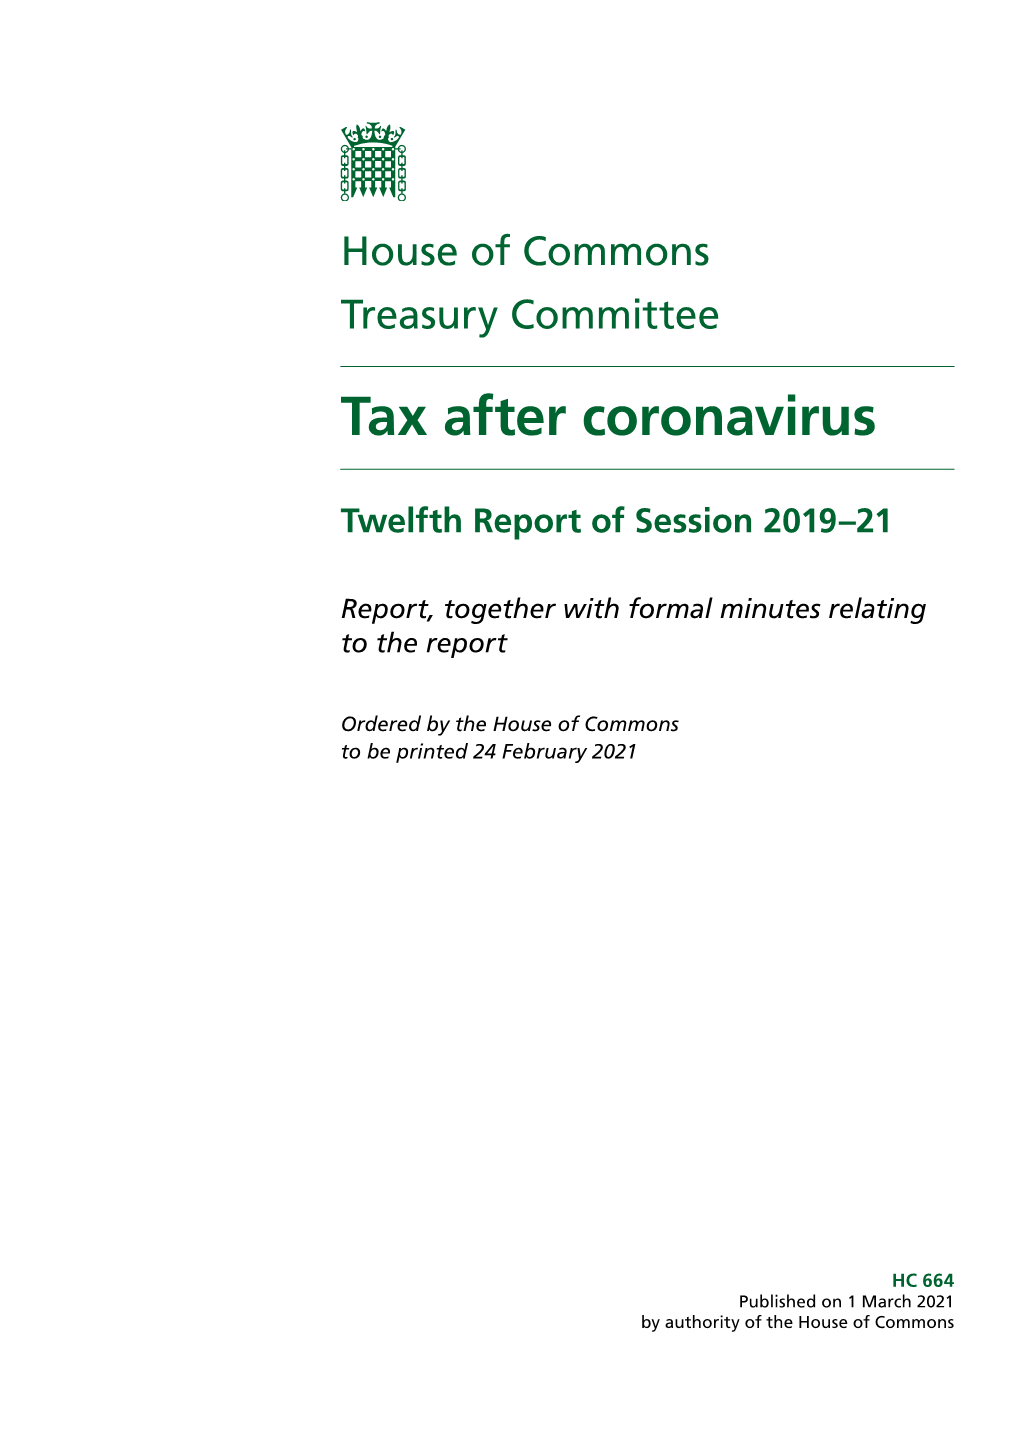 Tax After Coronavirus